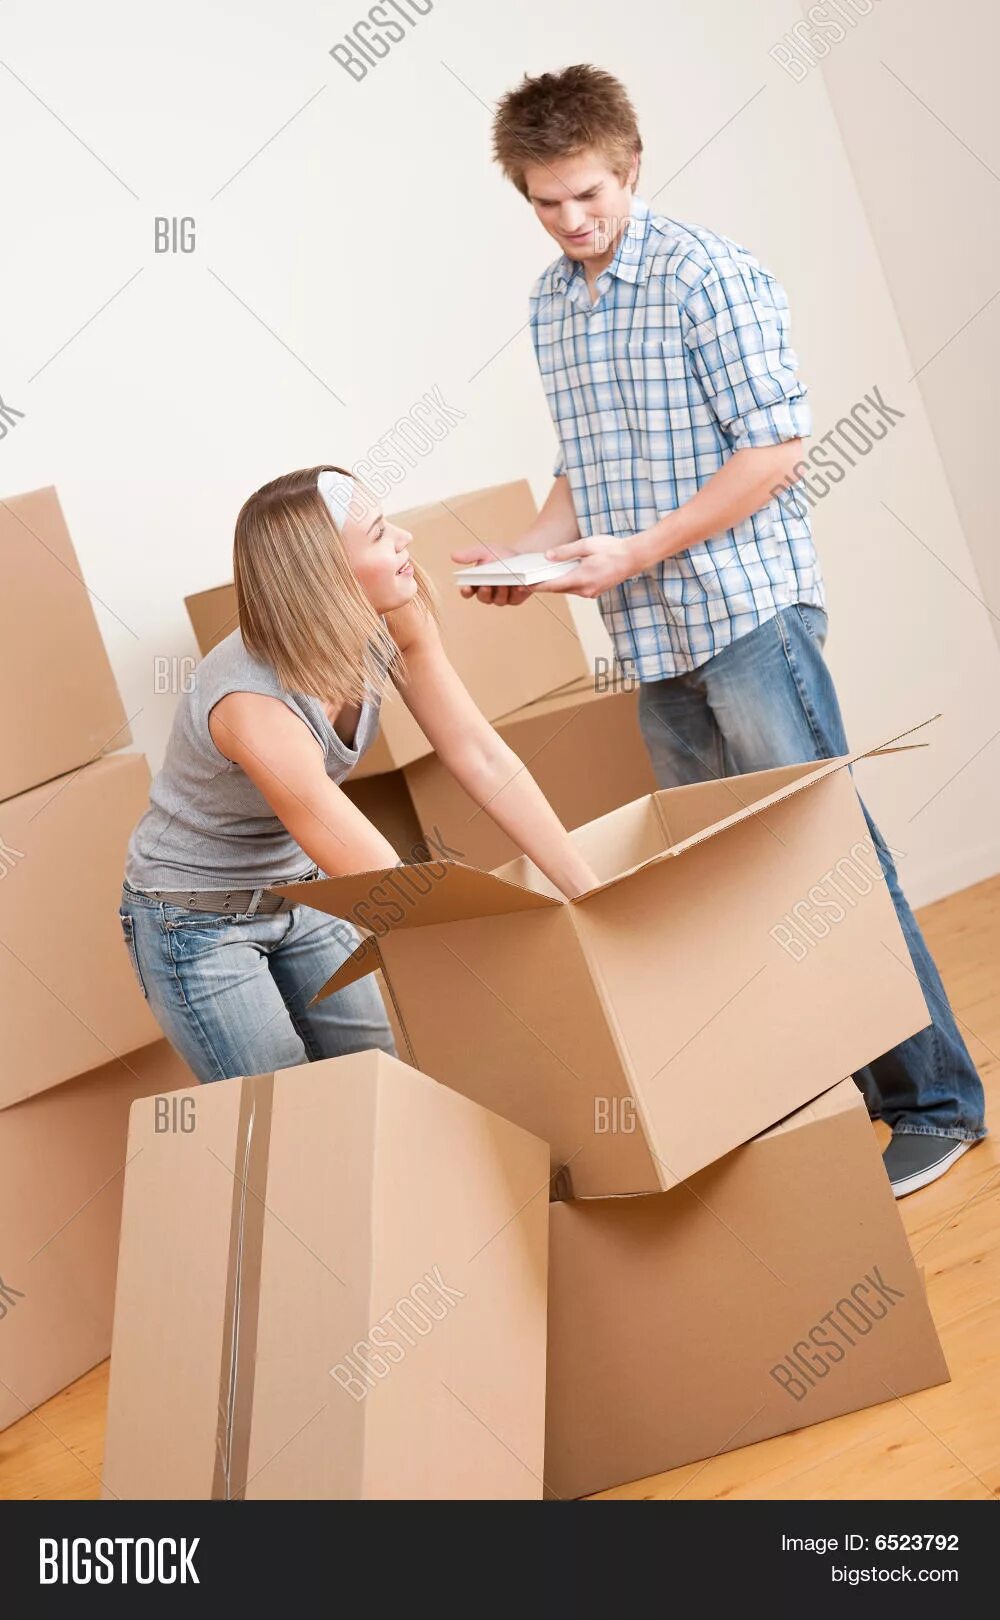 We have moved to a new. Молодежь переезжает. Переезд молодых. Женщина распаковывает ящики после переезда. Игра про переезд и распаковку вещей.